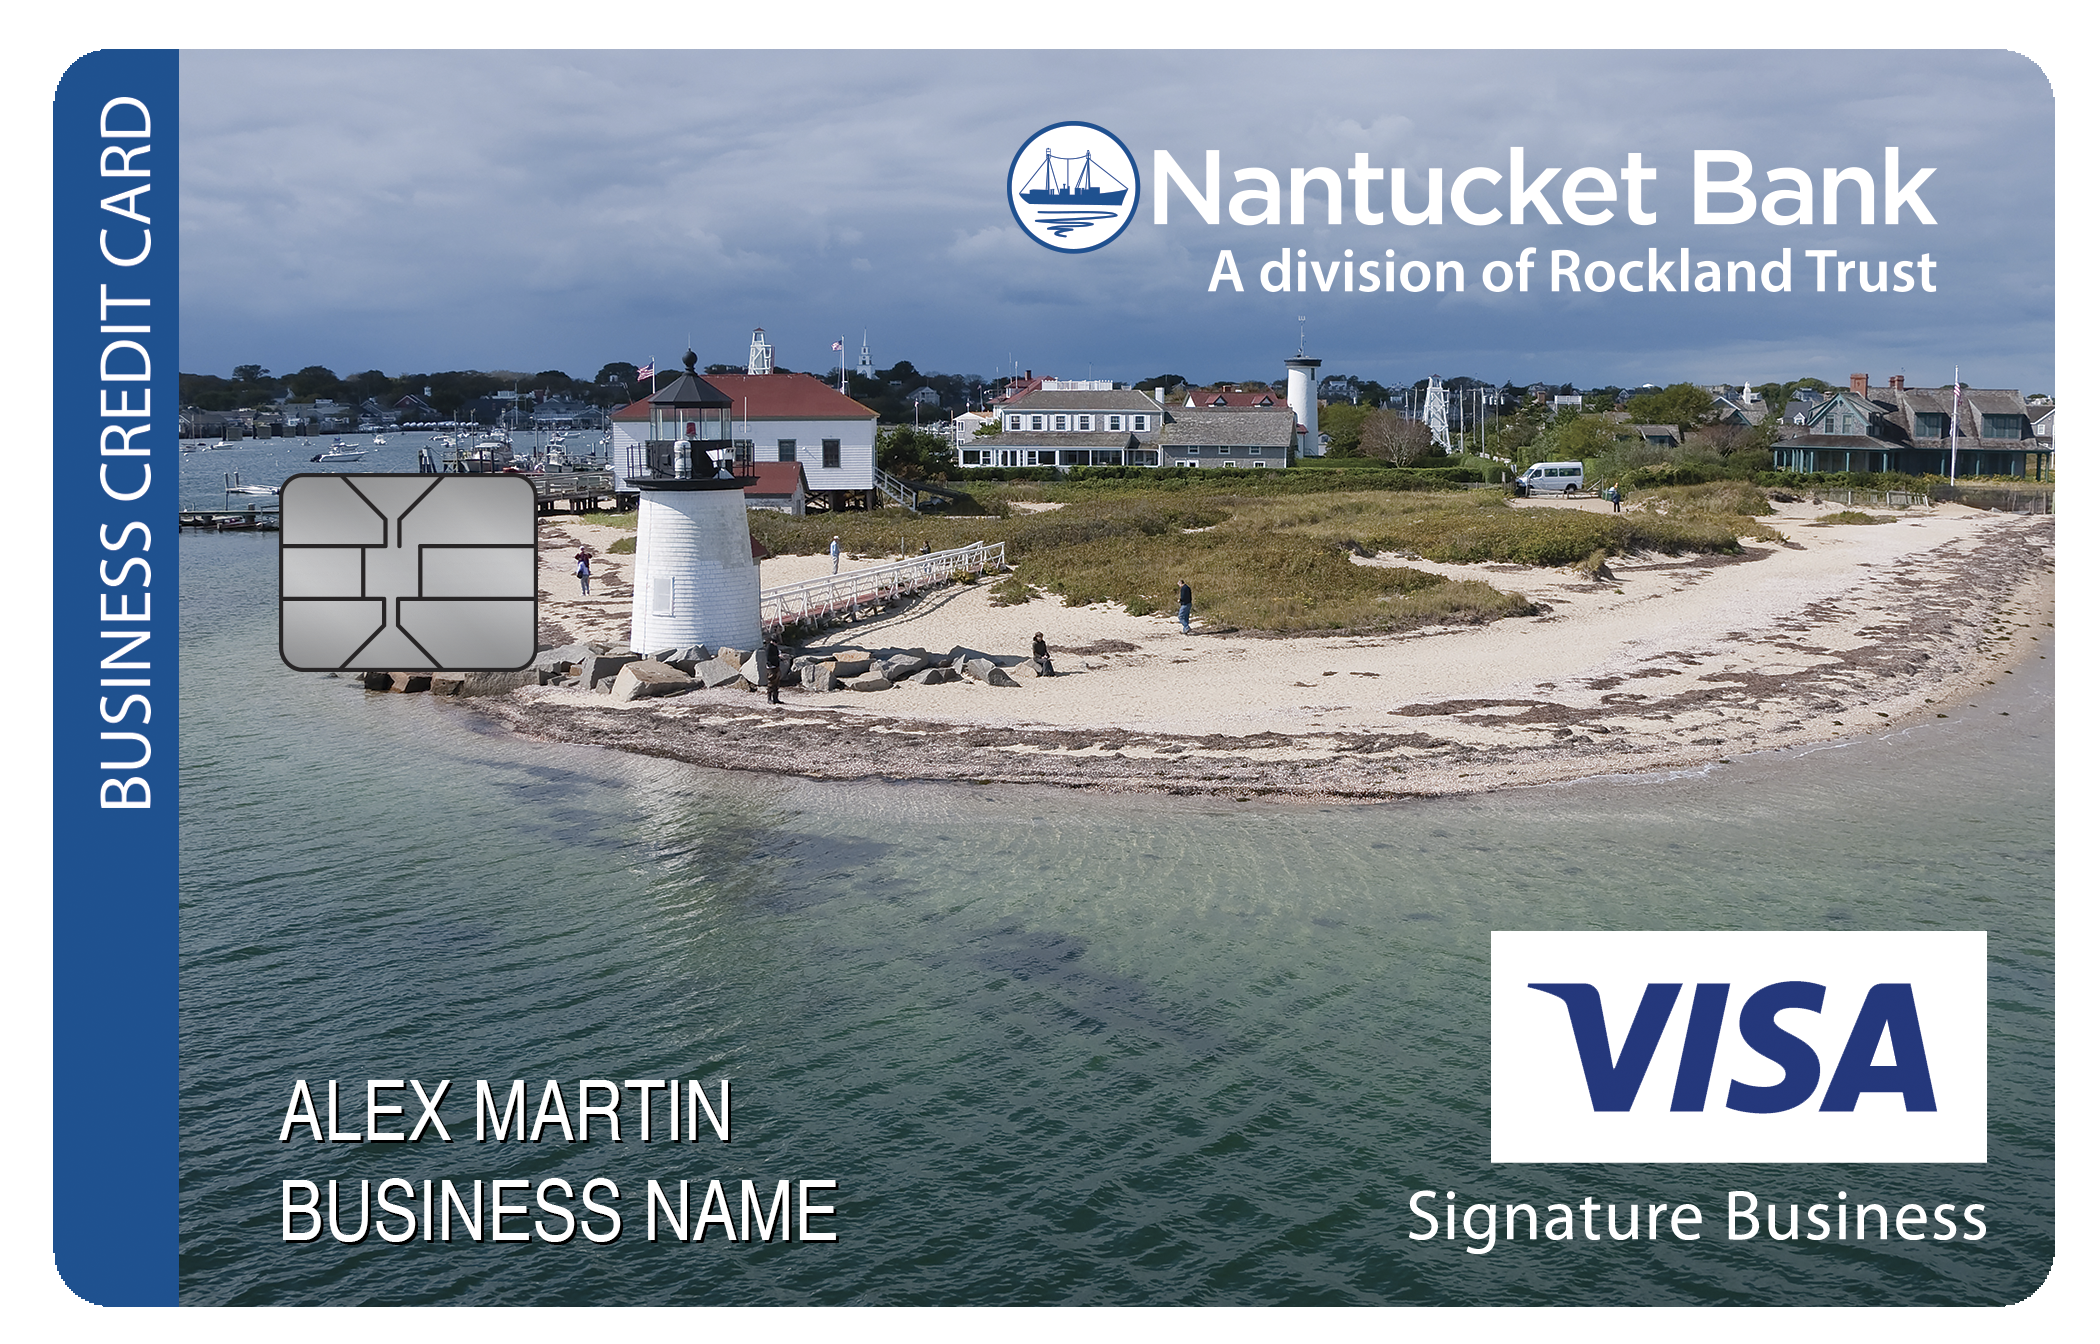 Nantucket Bank Smart Business Rewards Card